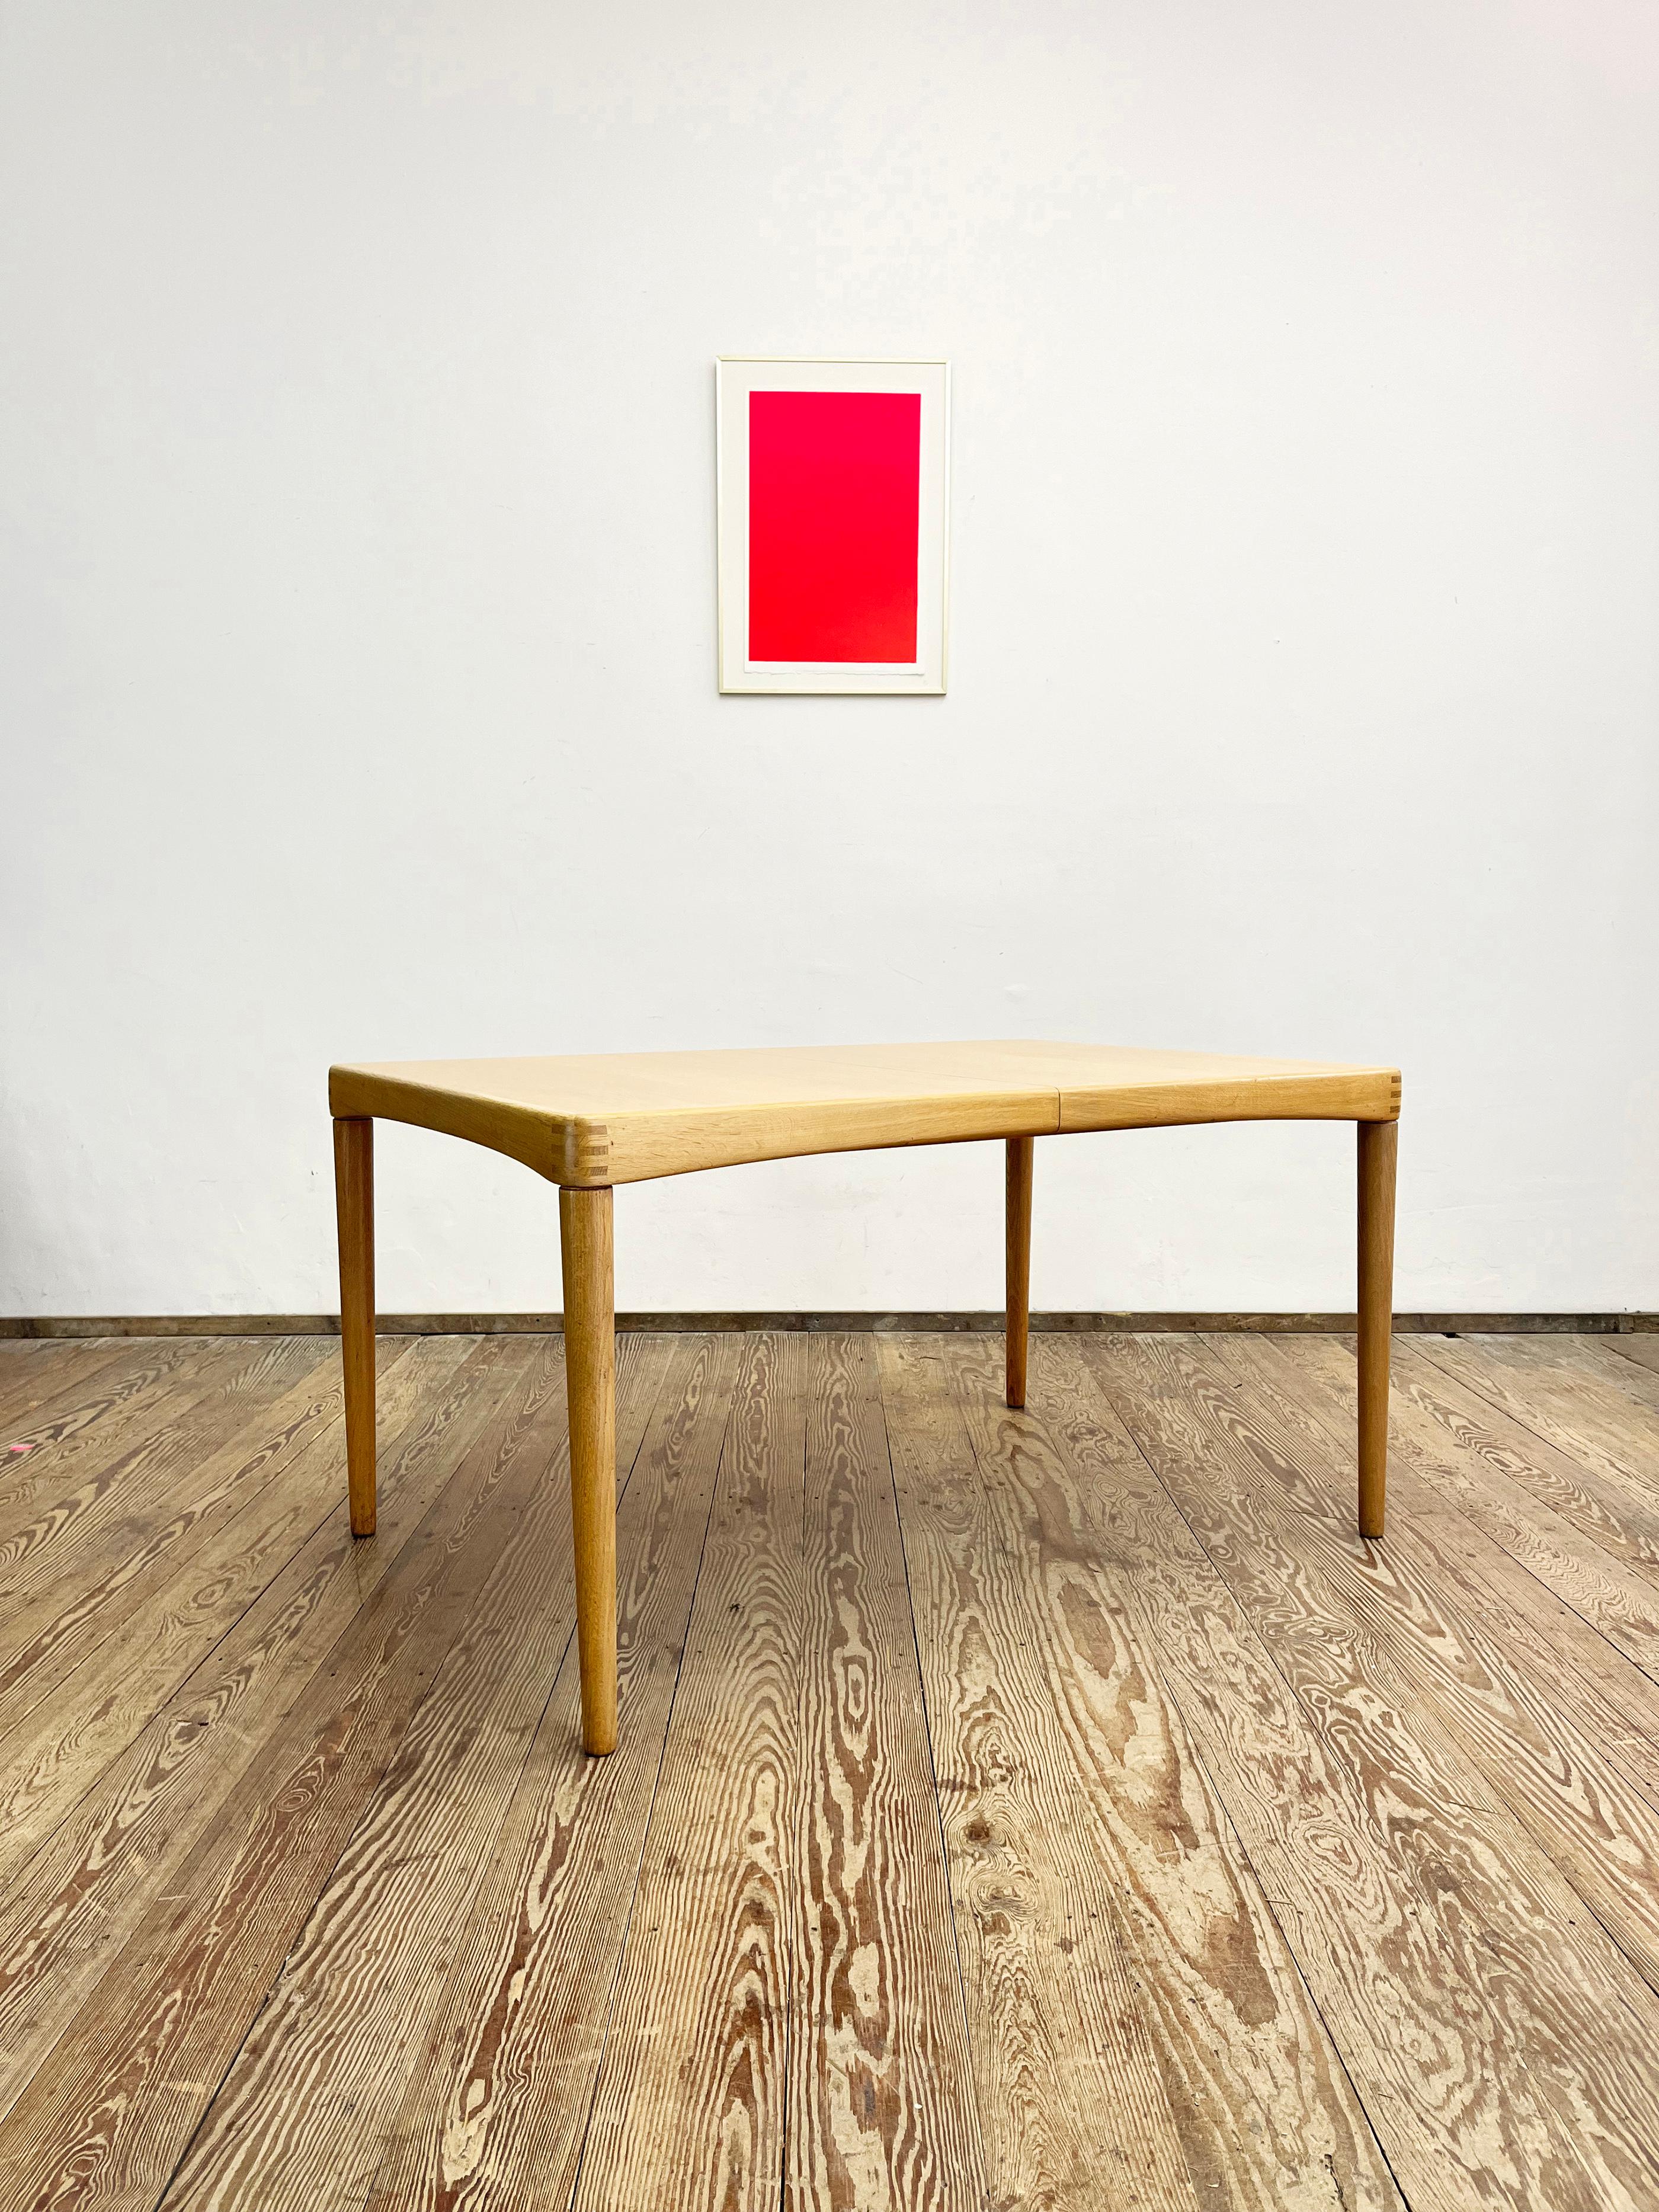 Dimensions 135 / 195 x 90 x 74 cm

Table de salle à manger élégante conçue par H.W. Klein et fabriqué en bois de chêne au Danemark par Bramin. Cette table présente des coins, des veines et des couleurs magnifiques. La table peut être rallongée